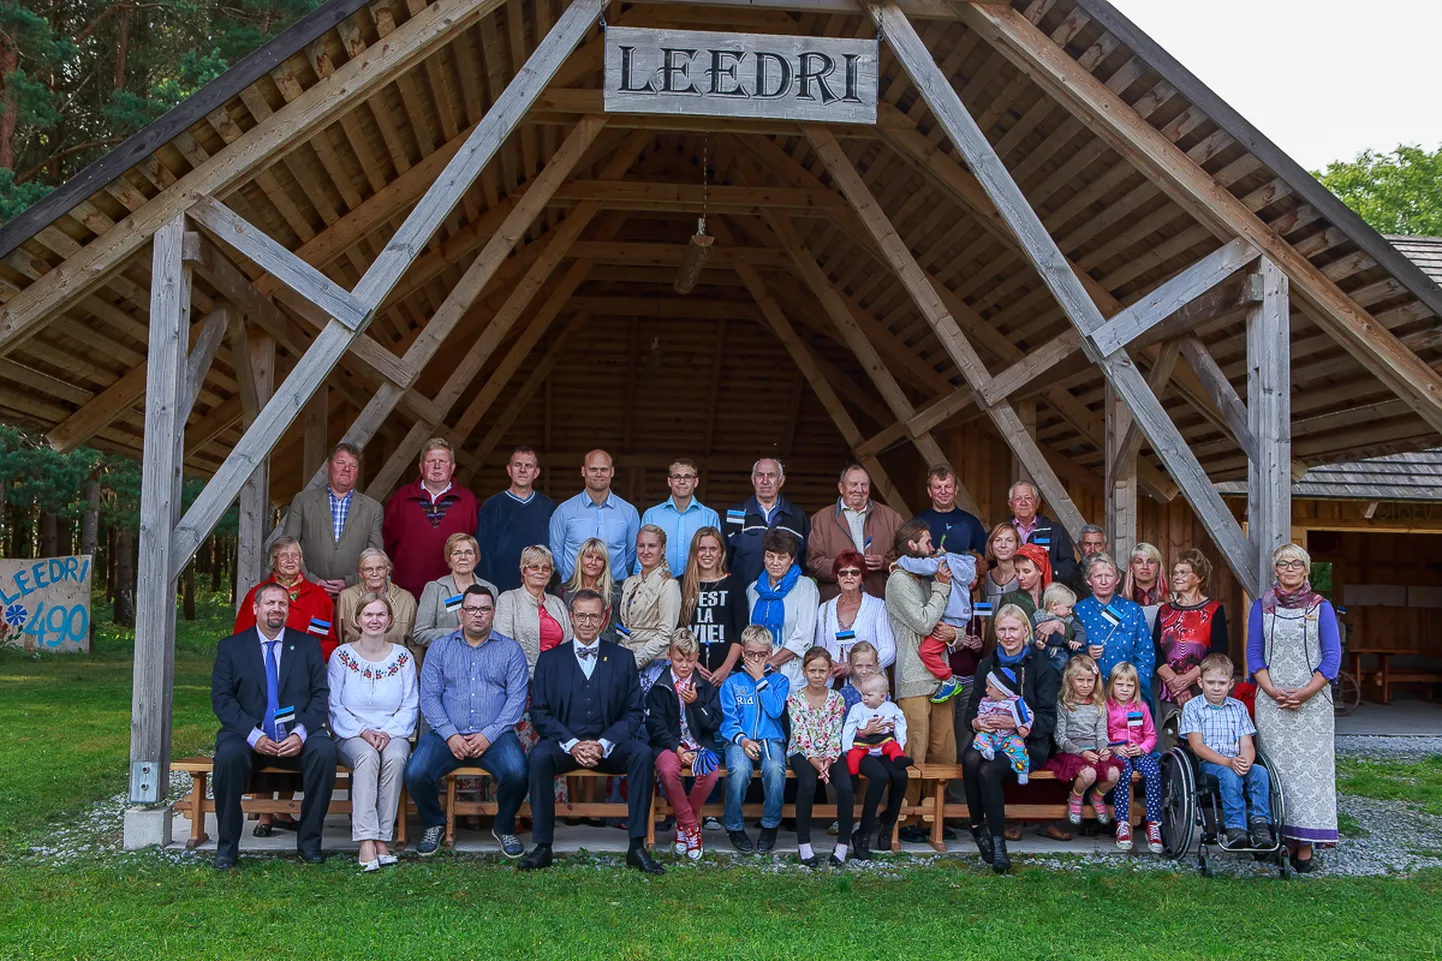 AASTA KÜLA: 2015 Leedri küla esindus koos president Toomas Hendrik Ilvesega.